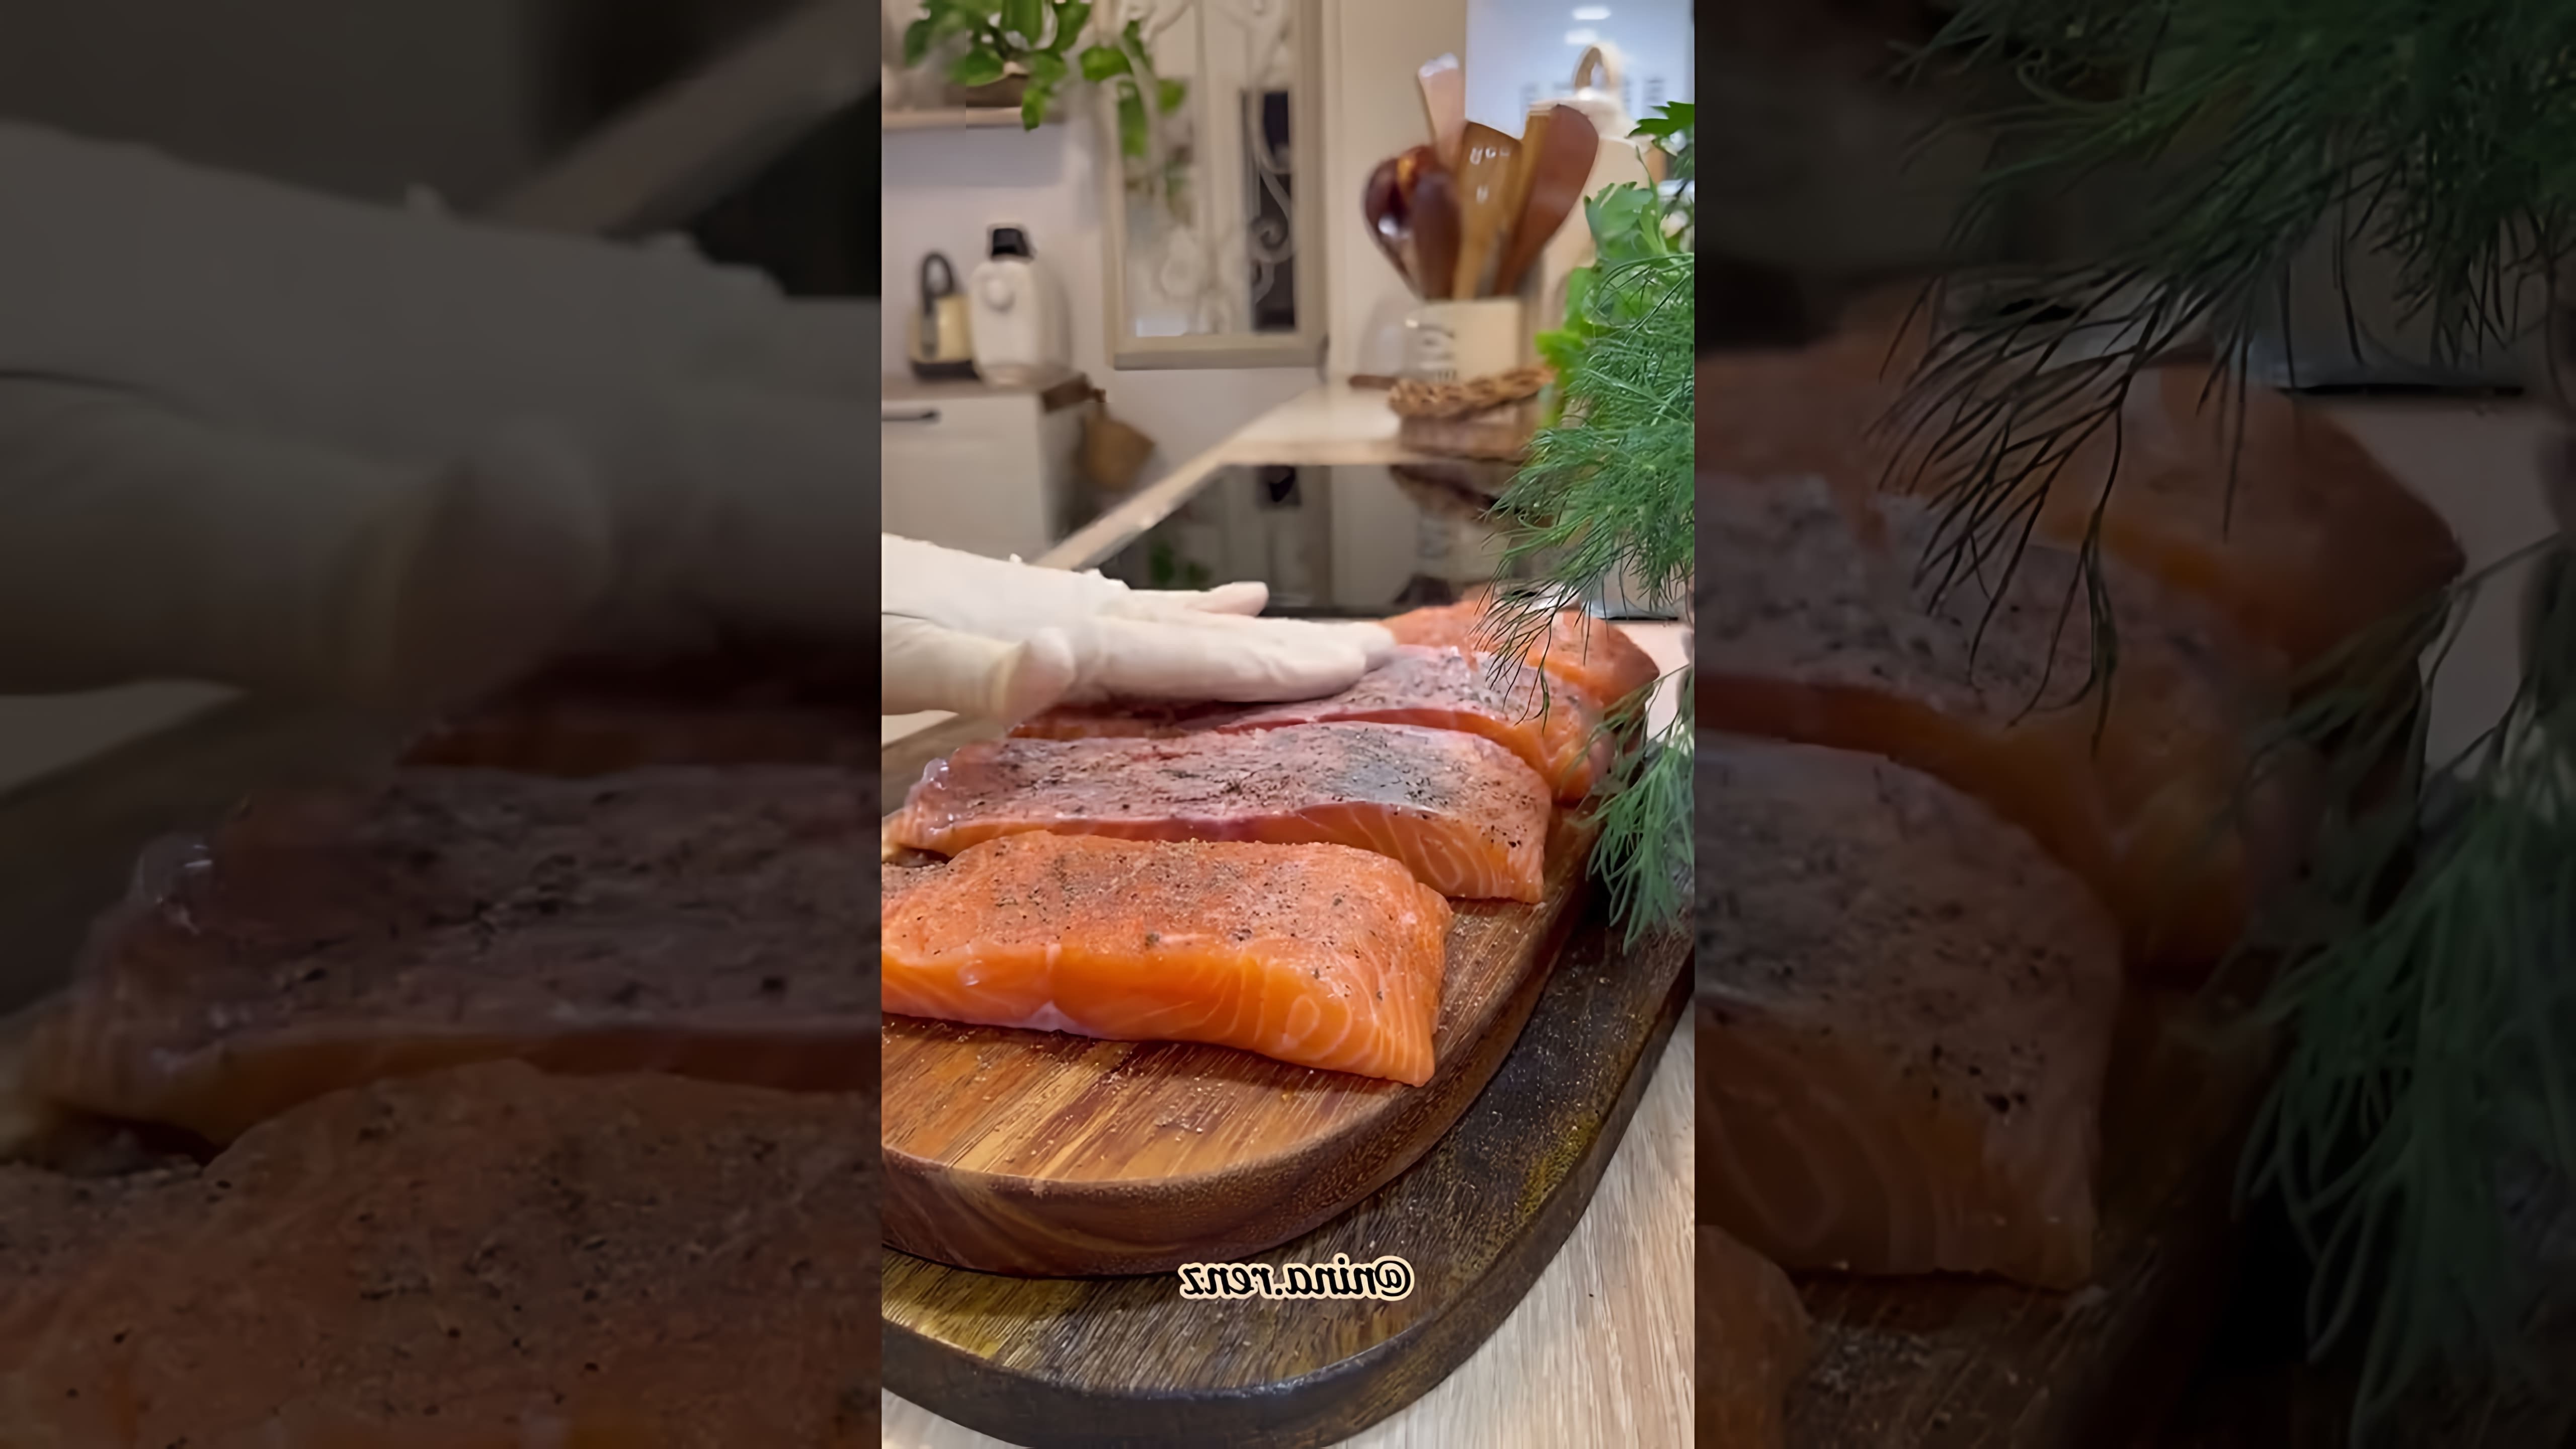 В этом видео демонстрируется рецепт приготовления красной рыбы с использованием сливочного соуса и овощей